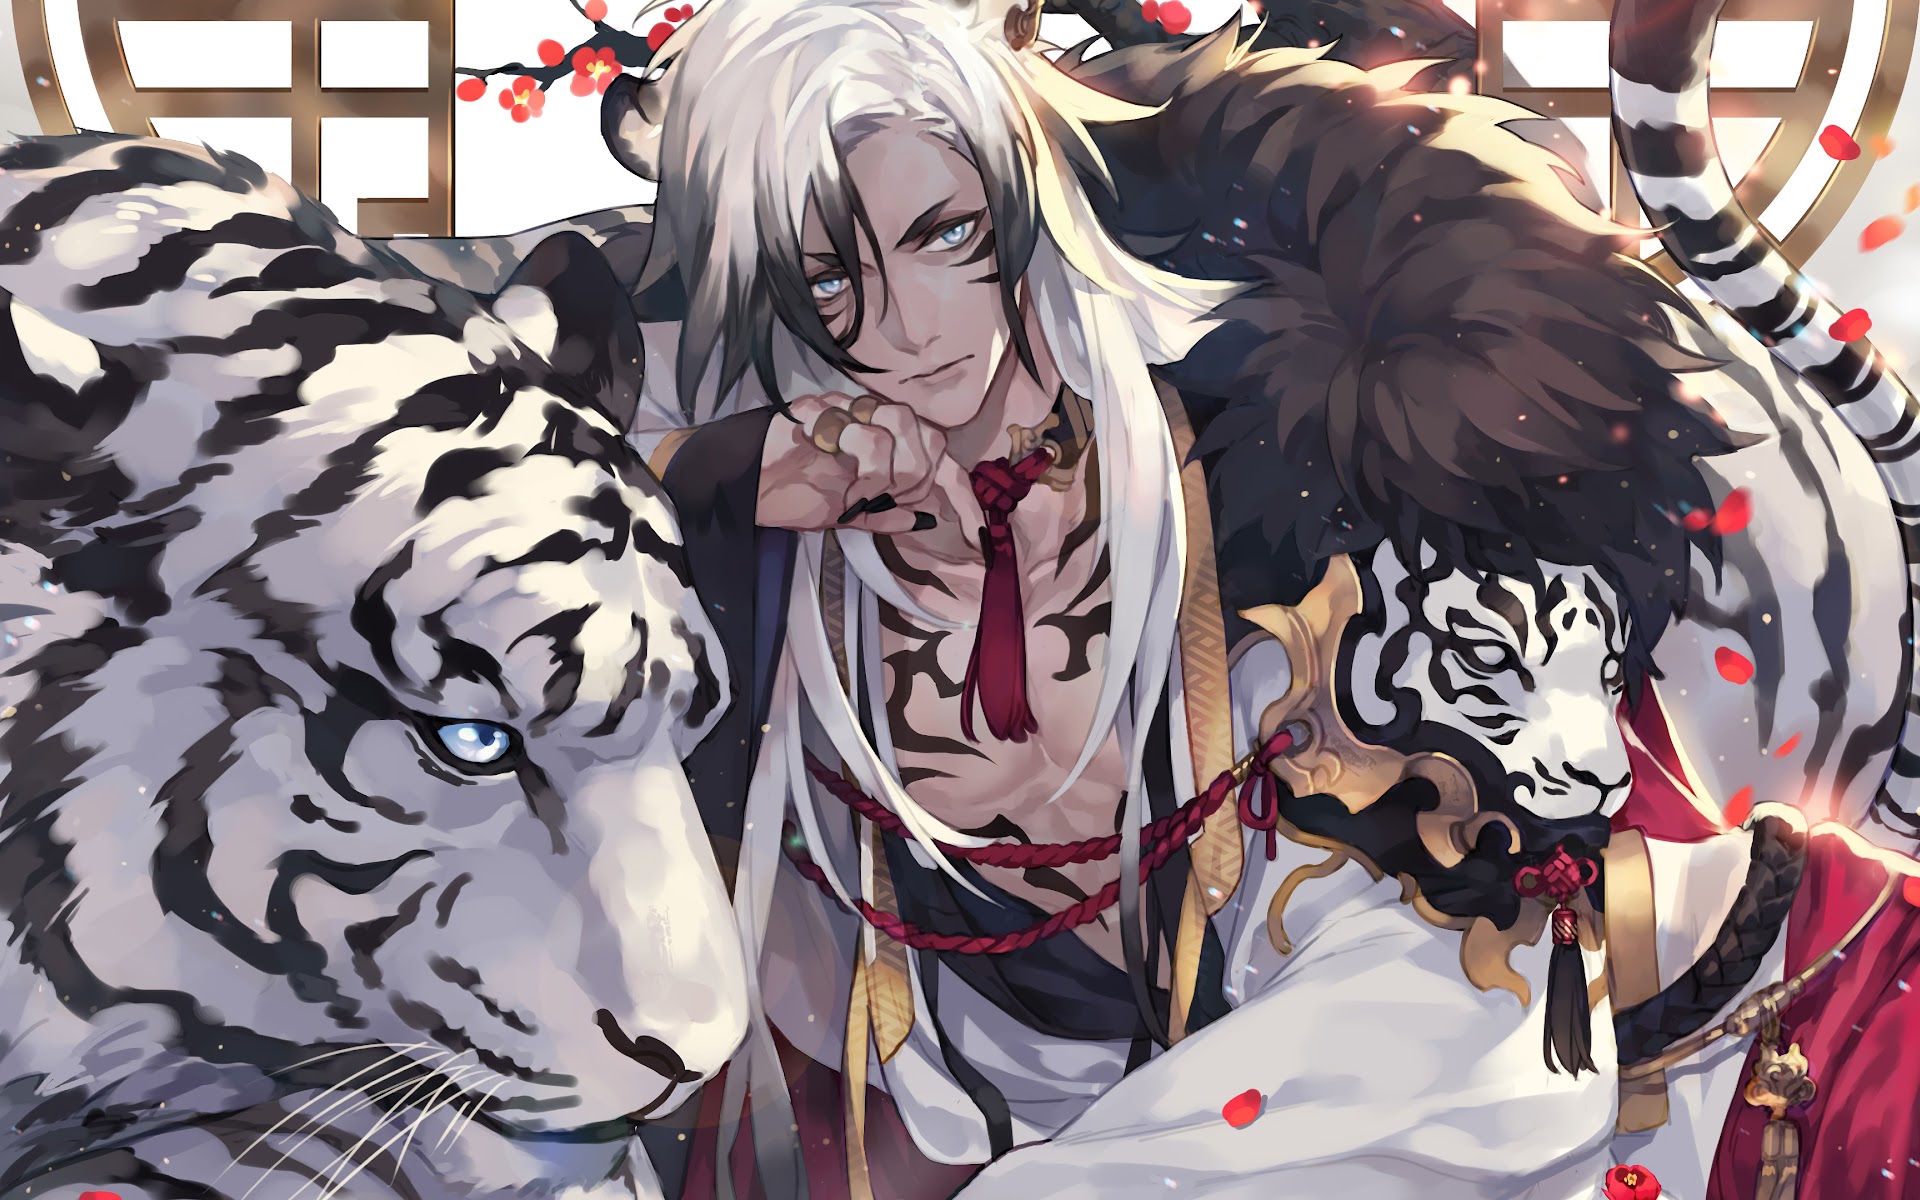 KREA - white tiger with armor, fursona, anthro, young boy, anime key  visual, detailed armor, detailed white fur, makoto shinkai, portrait